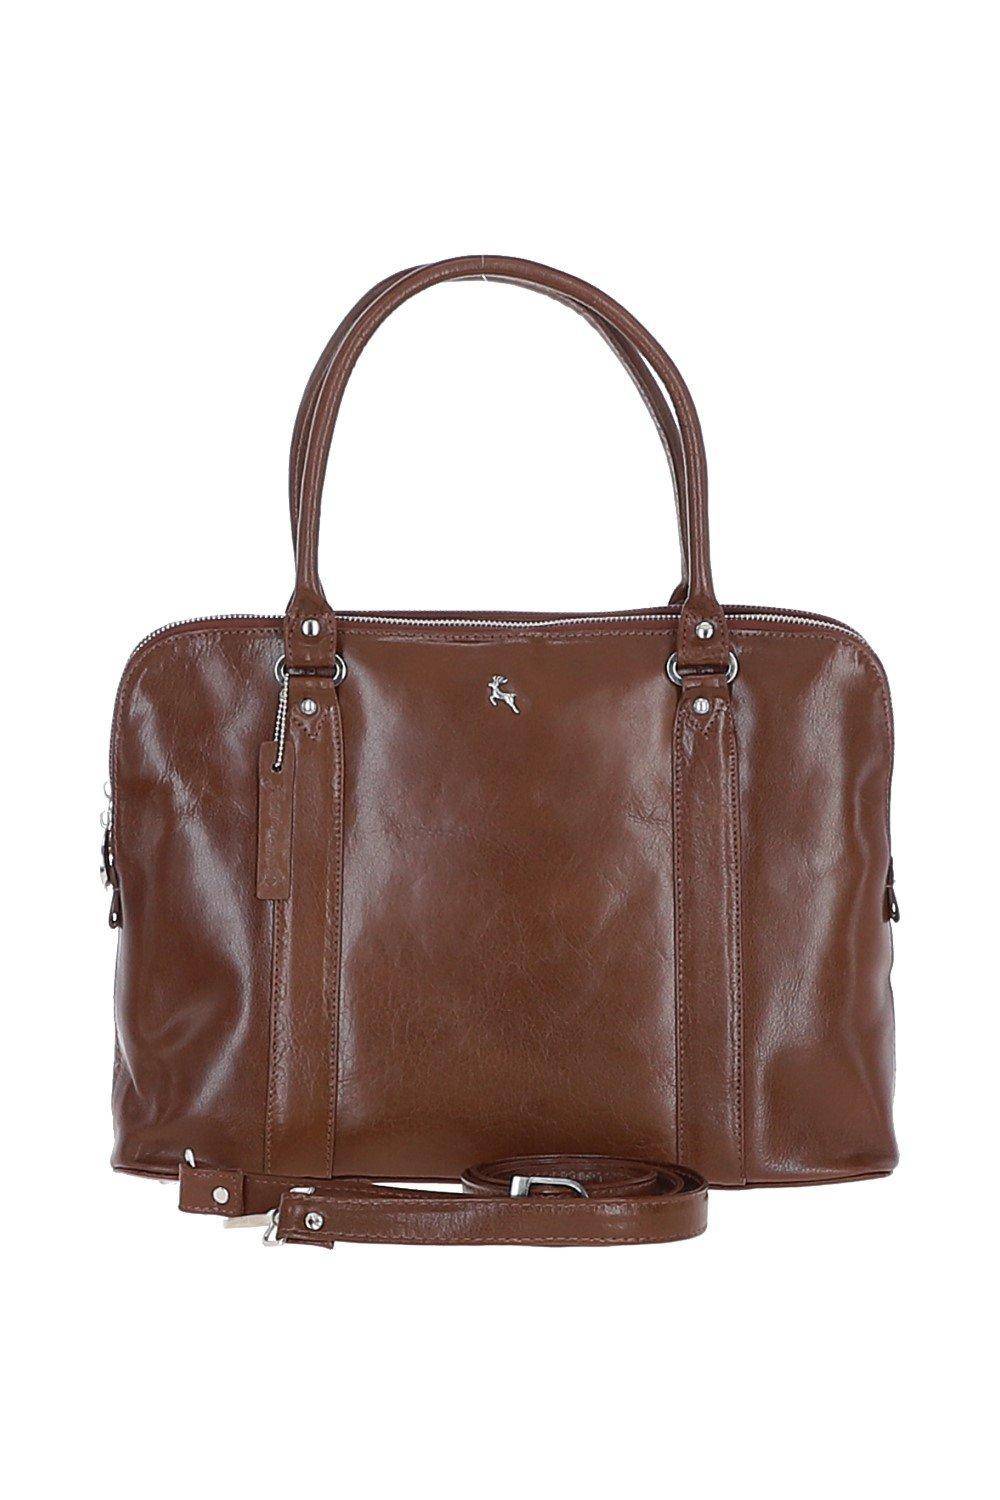 Большая трехсекционная кожаная сумка растительного дубления Ashwood Leather, коричневый сумка кобура повседневная натуральная кожа внутренний карман регулируемый ремень черный